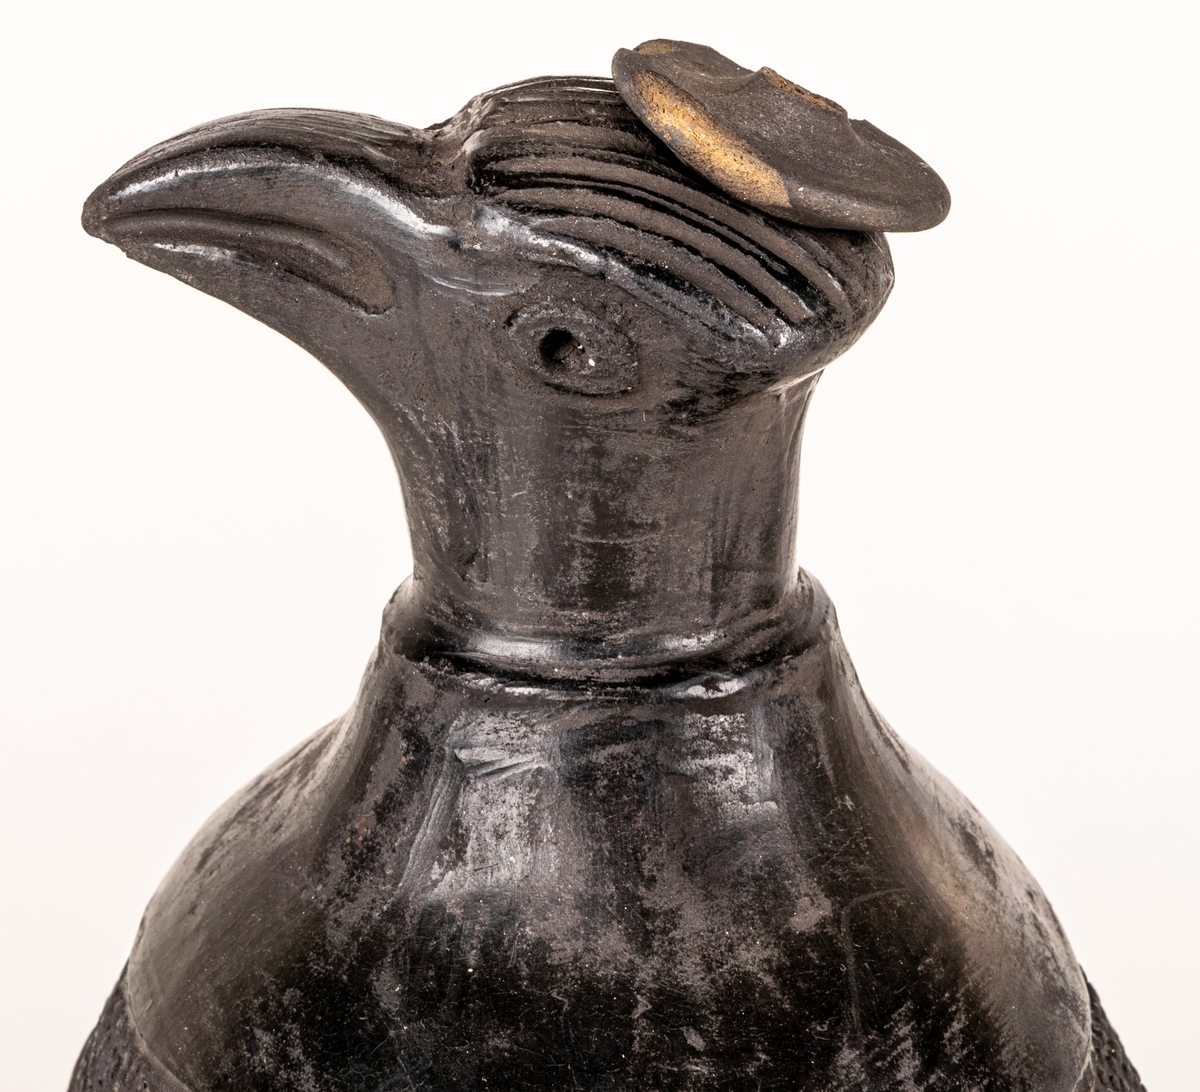 Gravkärl, inca, så kallat svartgods, med fågelhuvud, örn och pelikan.